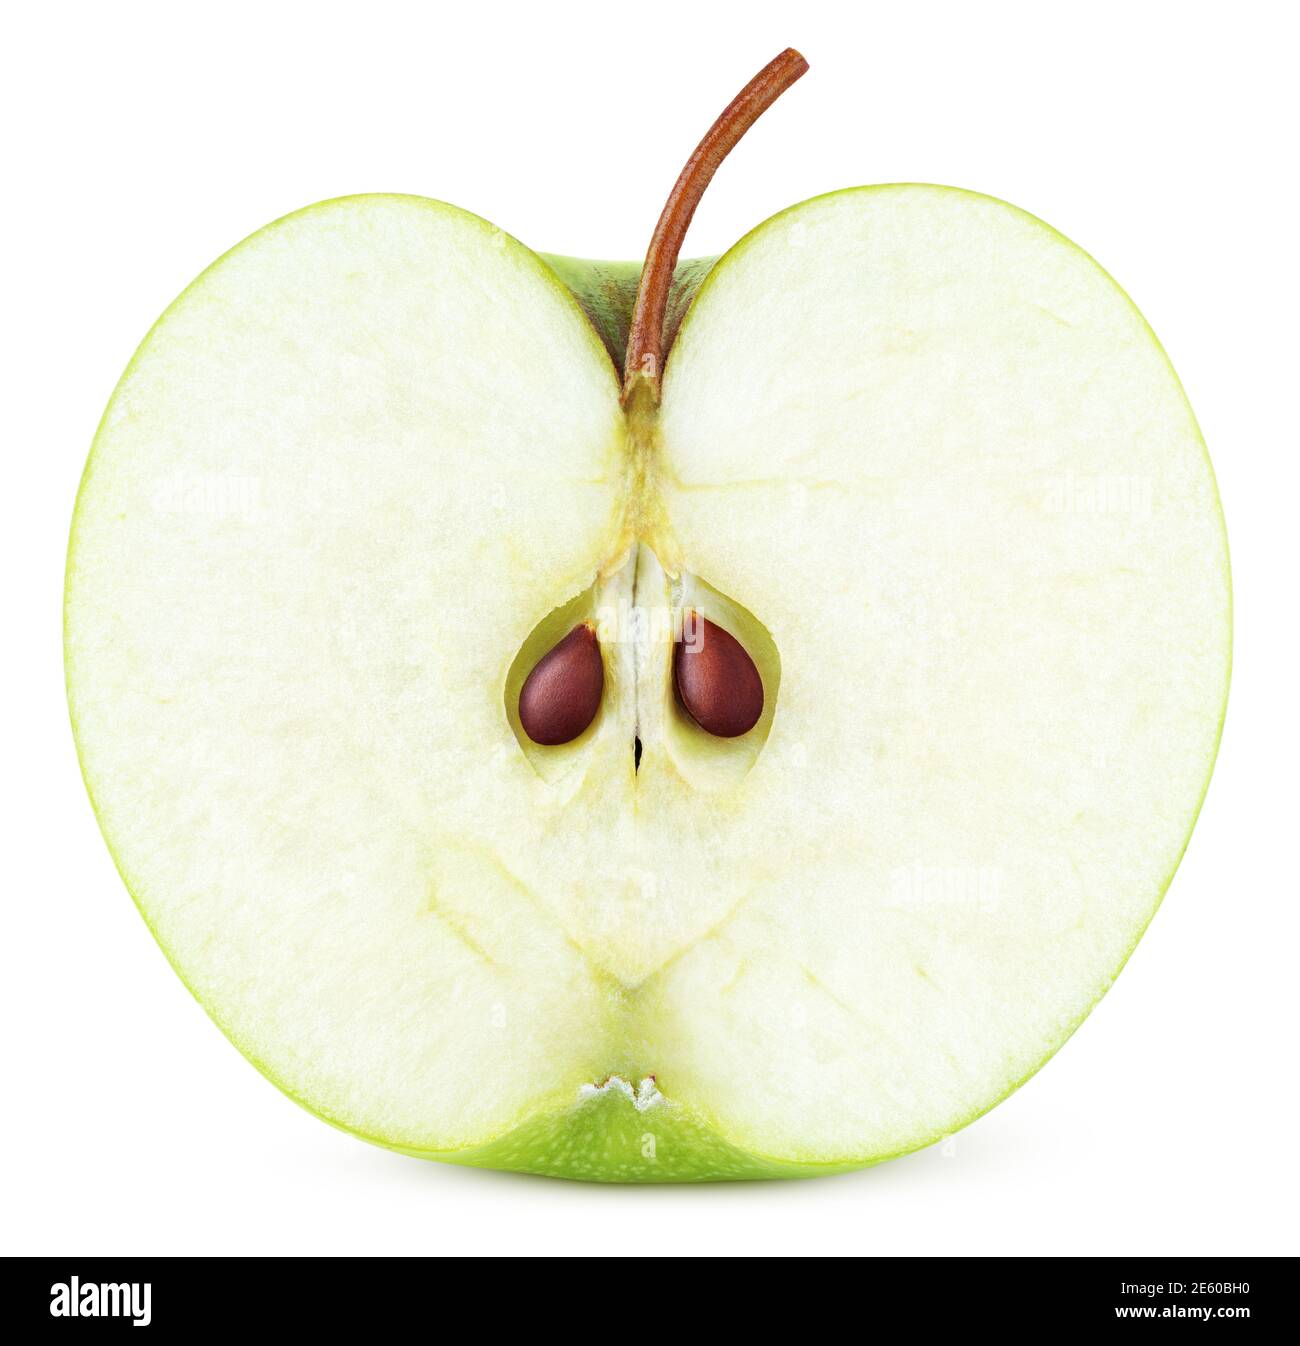 Metà verde di mela con semi isolati su sfondo bianco. Metà di mela verde con percorso di ritaglio. Profondità di campo completa Foto Stock